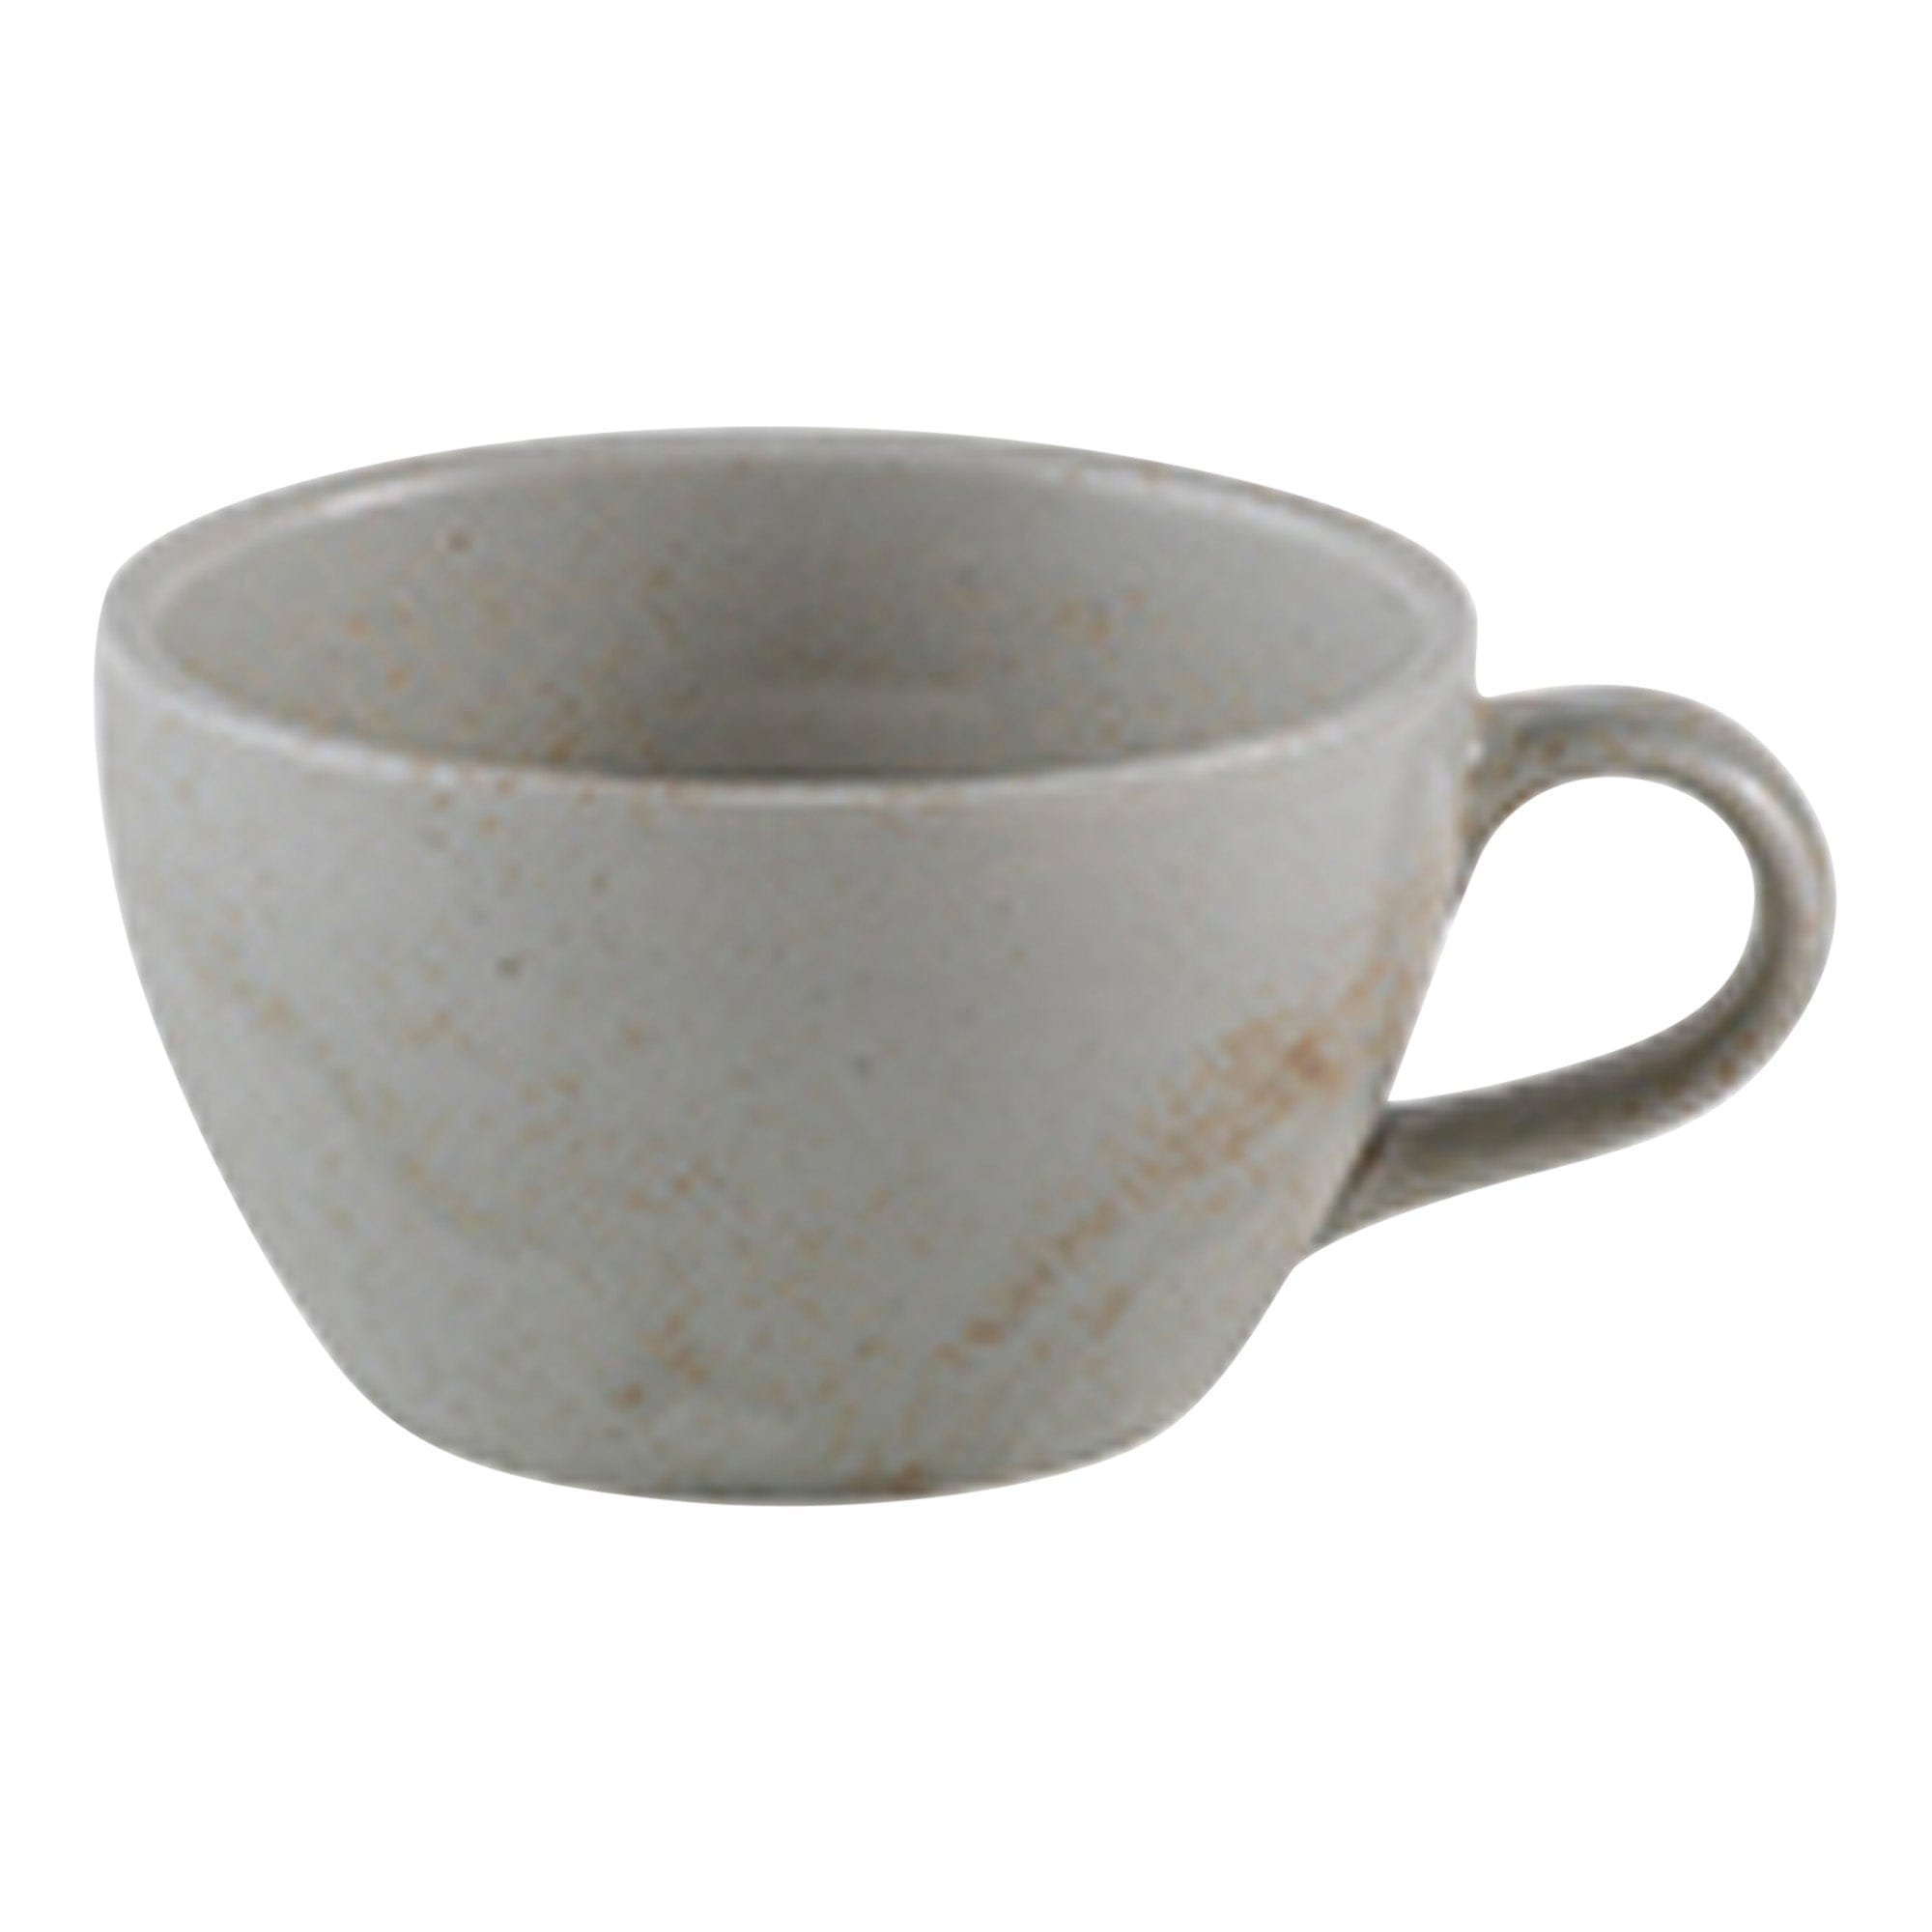 Mellow Porcelain Cup 4" / 9oz